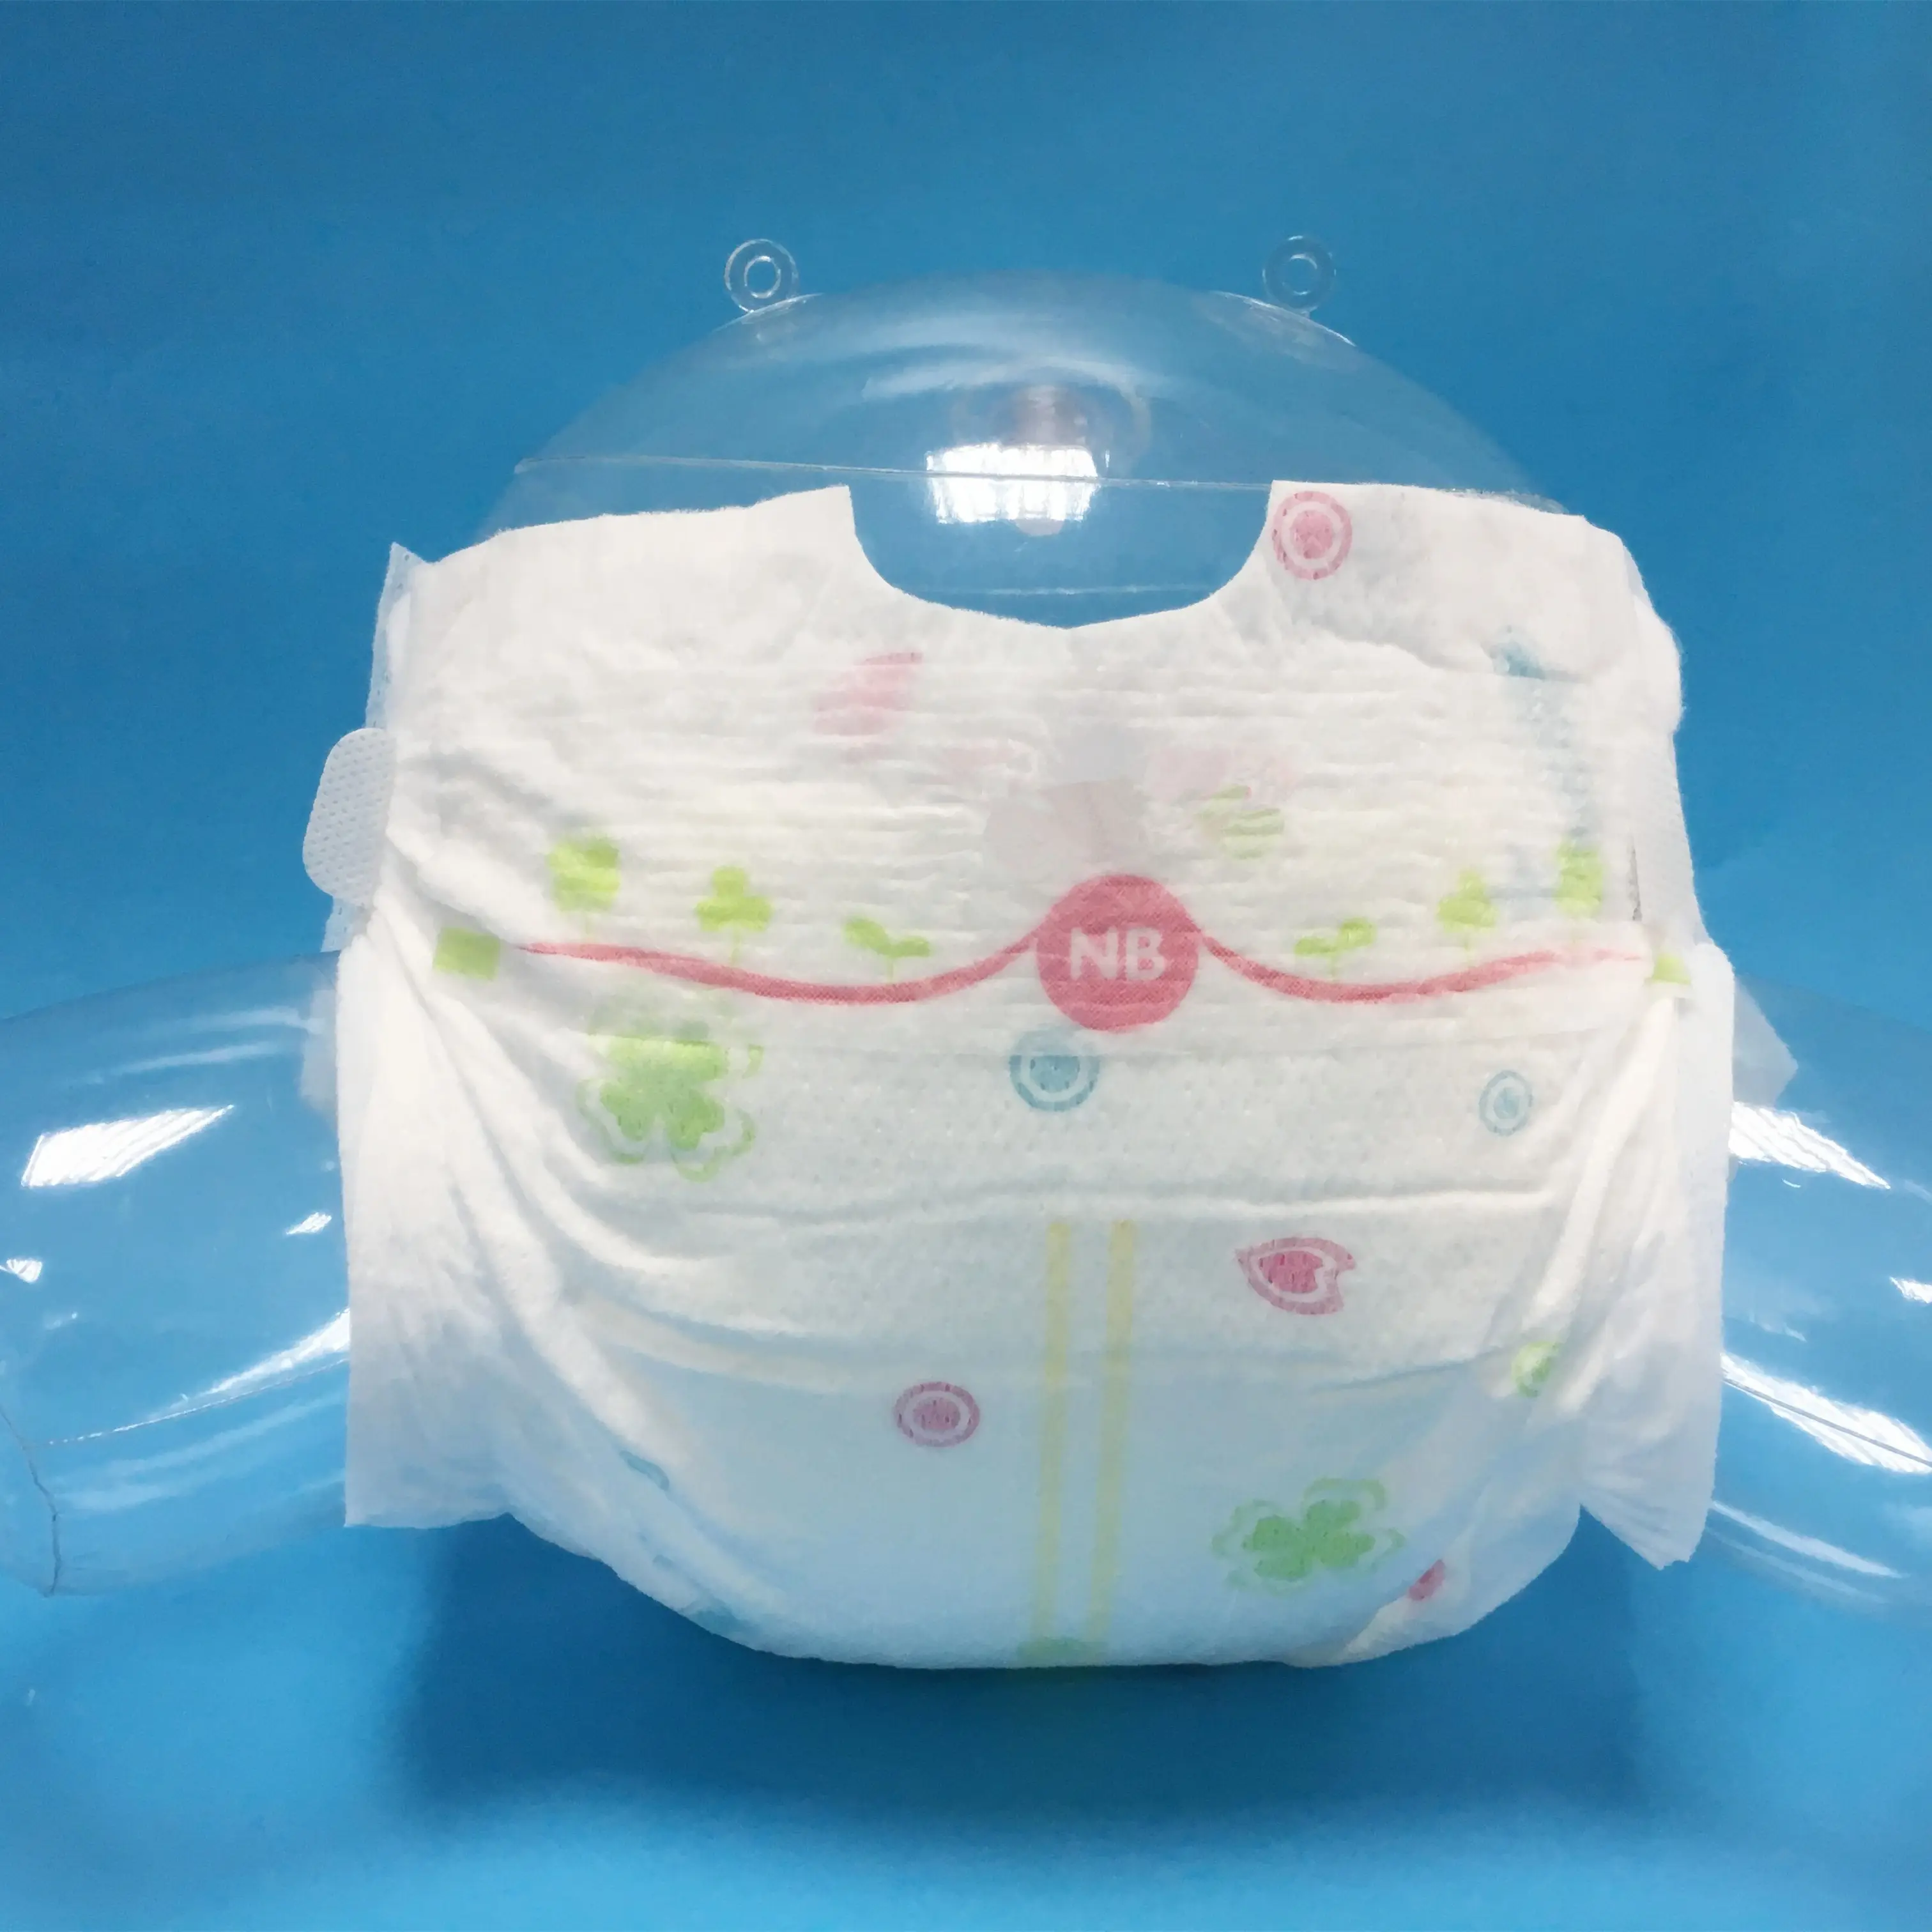 Fábrica OEM/ODM de fraldas para bebês, fraldas descartáveis para recém-nascidos sonolentas, fabricante na China